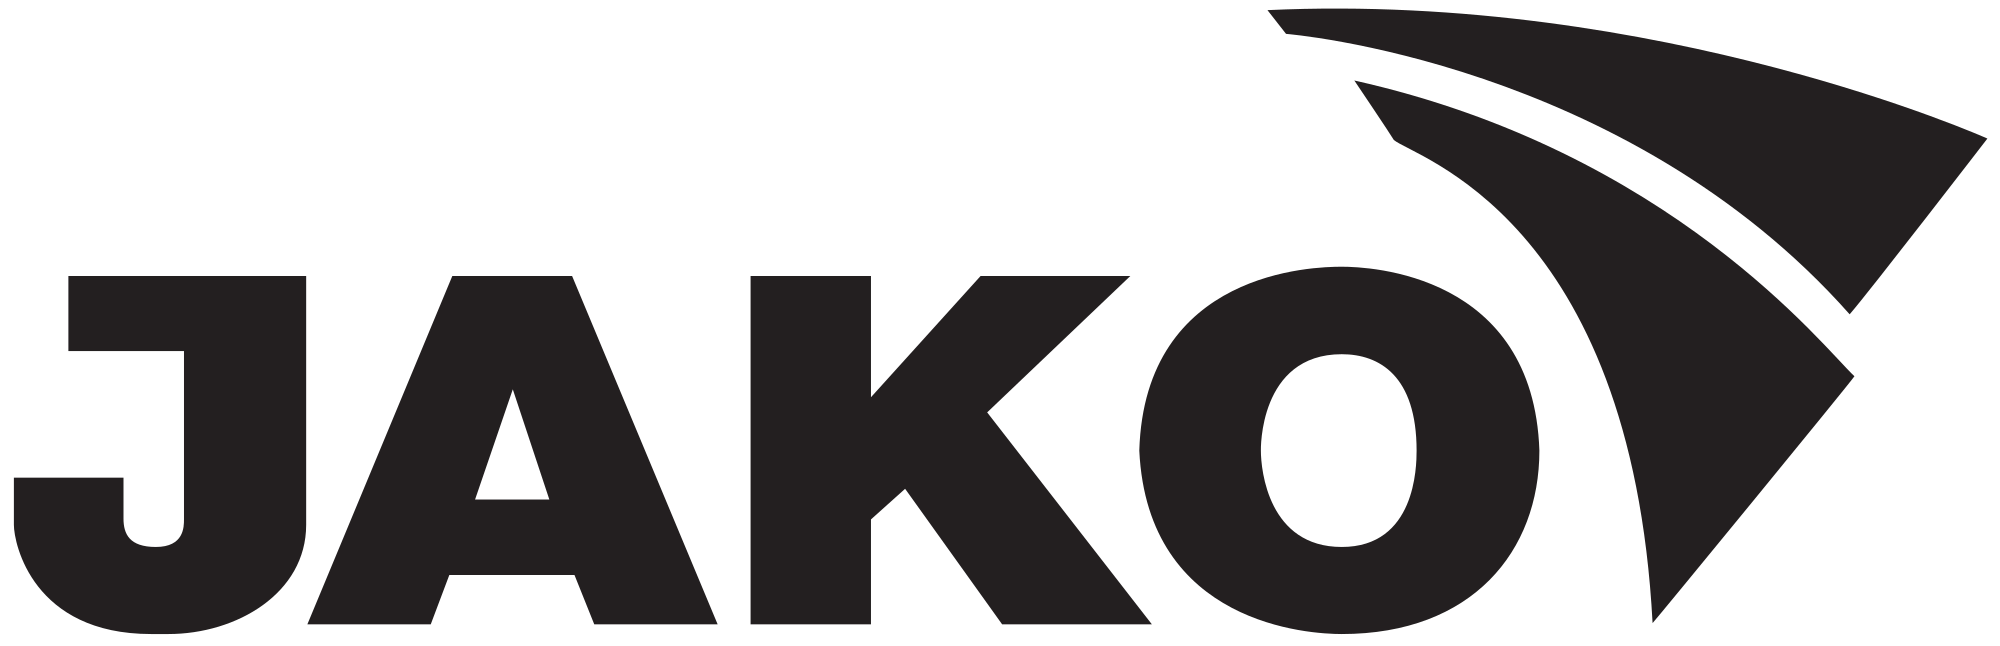 logo jako schwarz